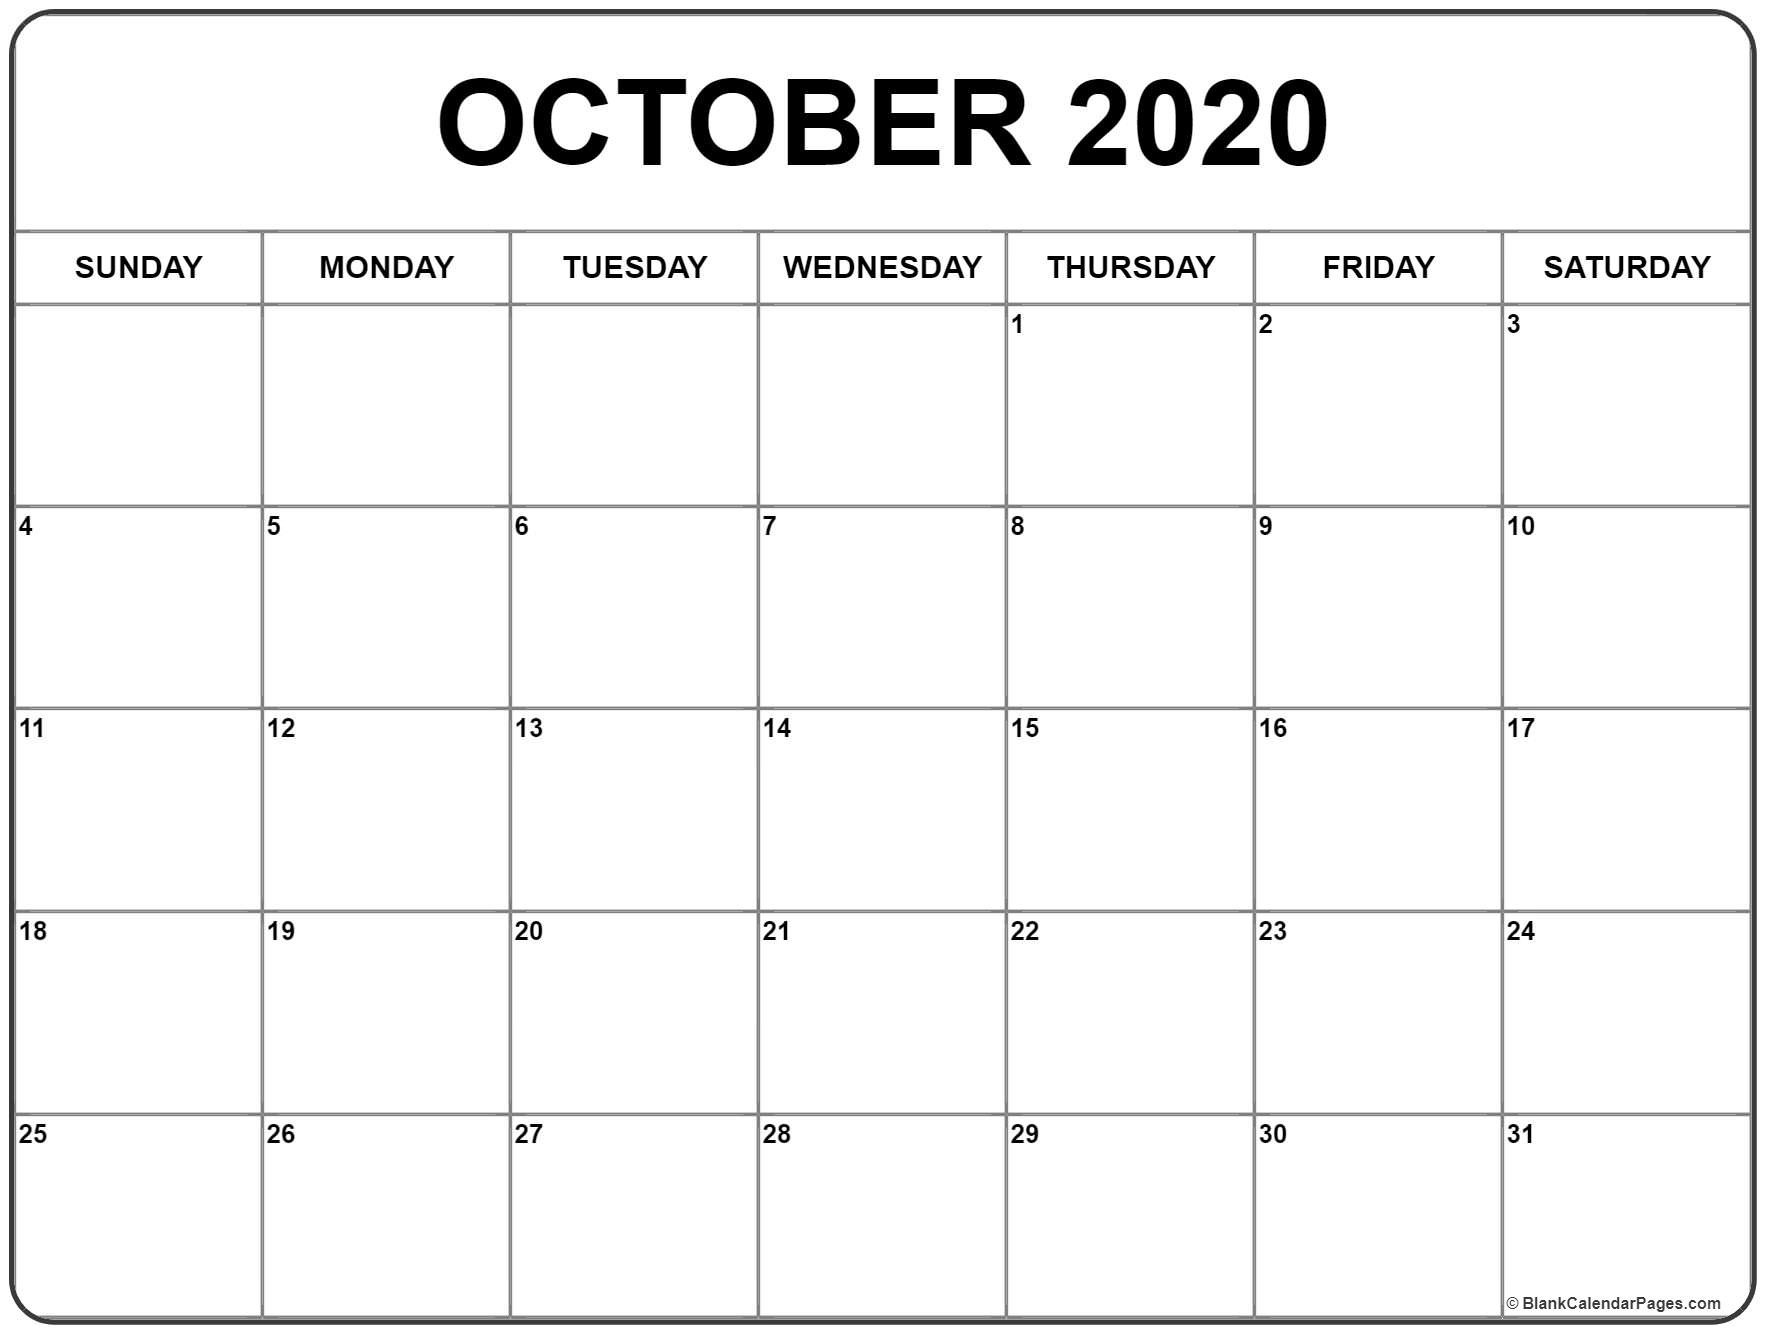 October 2020 Calendar | Thekpark-Hadong-October 2020 Calendar Holidays Jewish